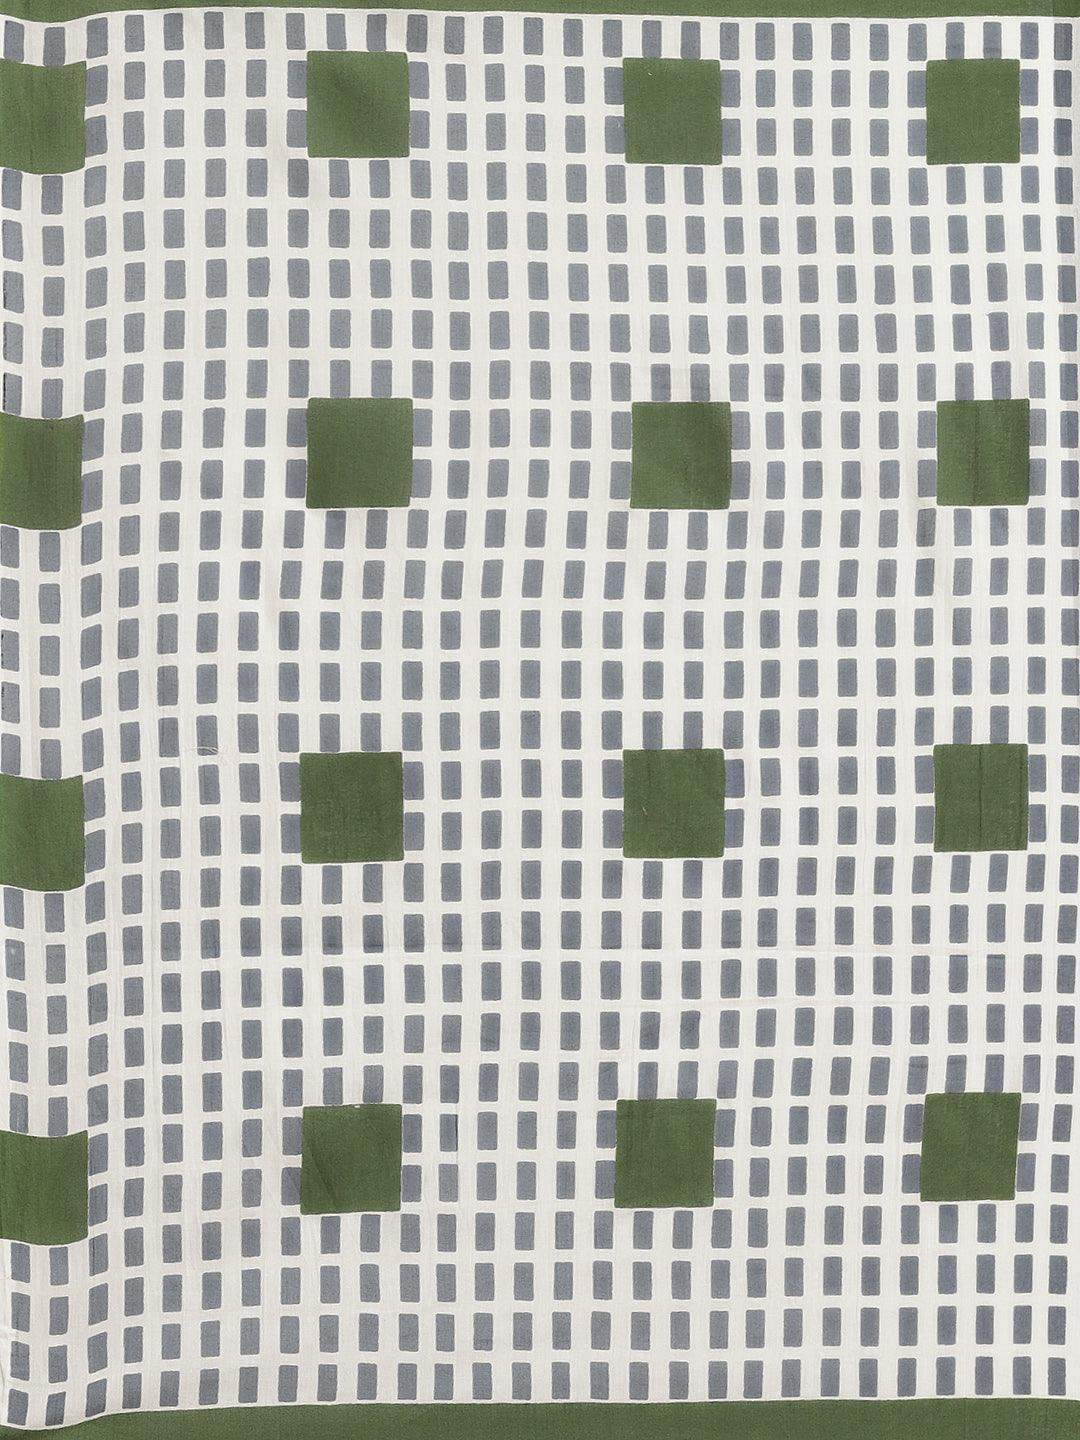 Green Printed Cotton Saree - Libas